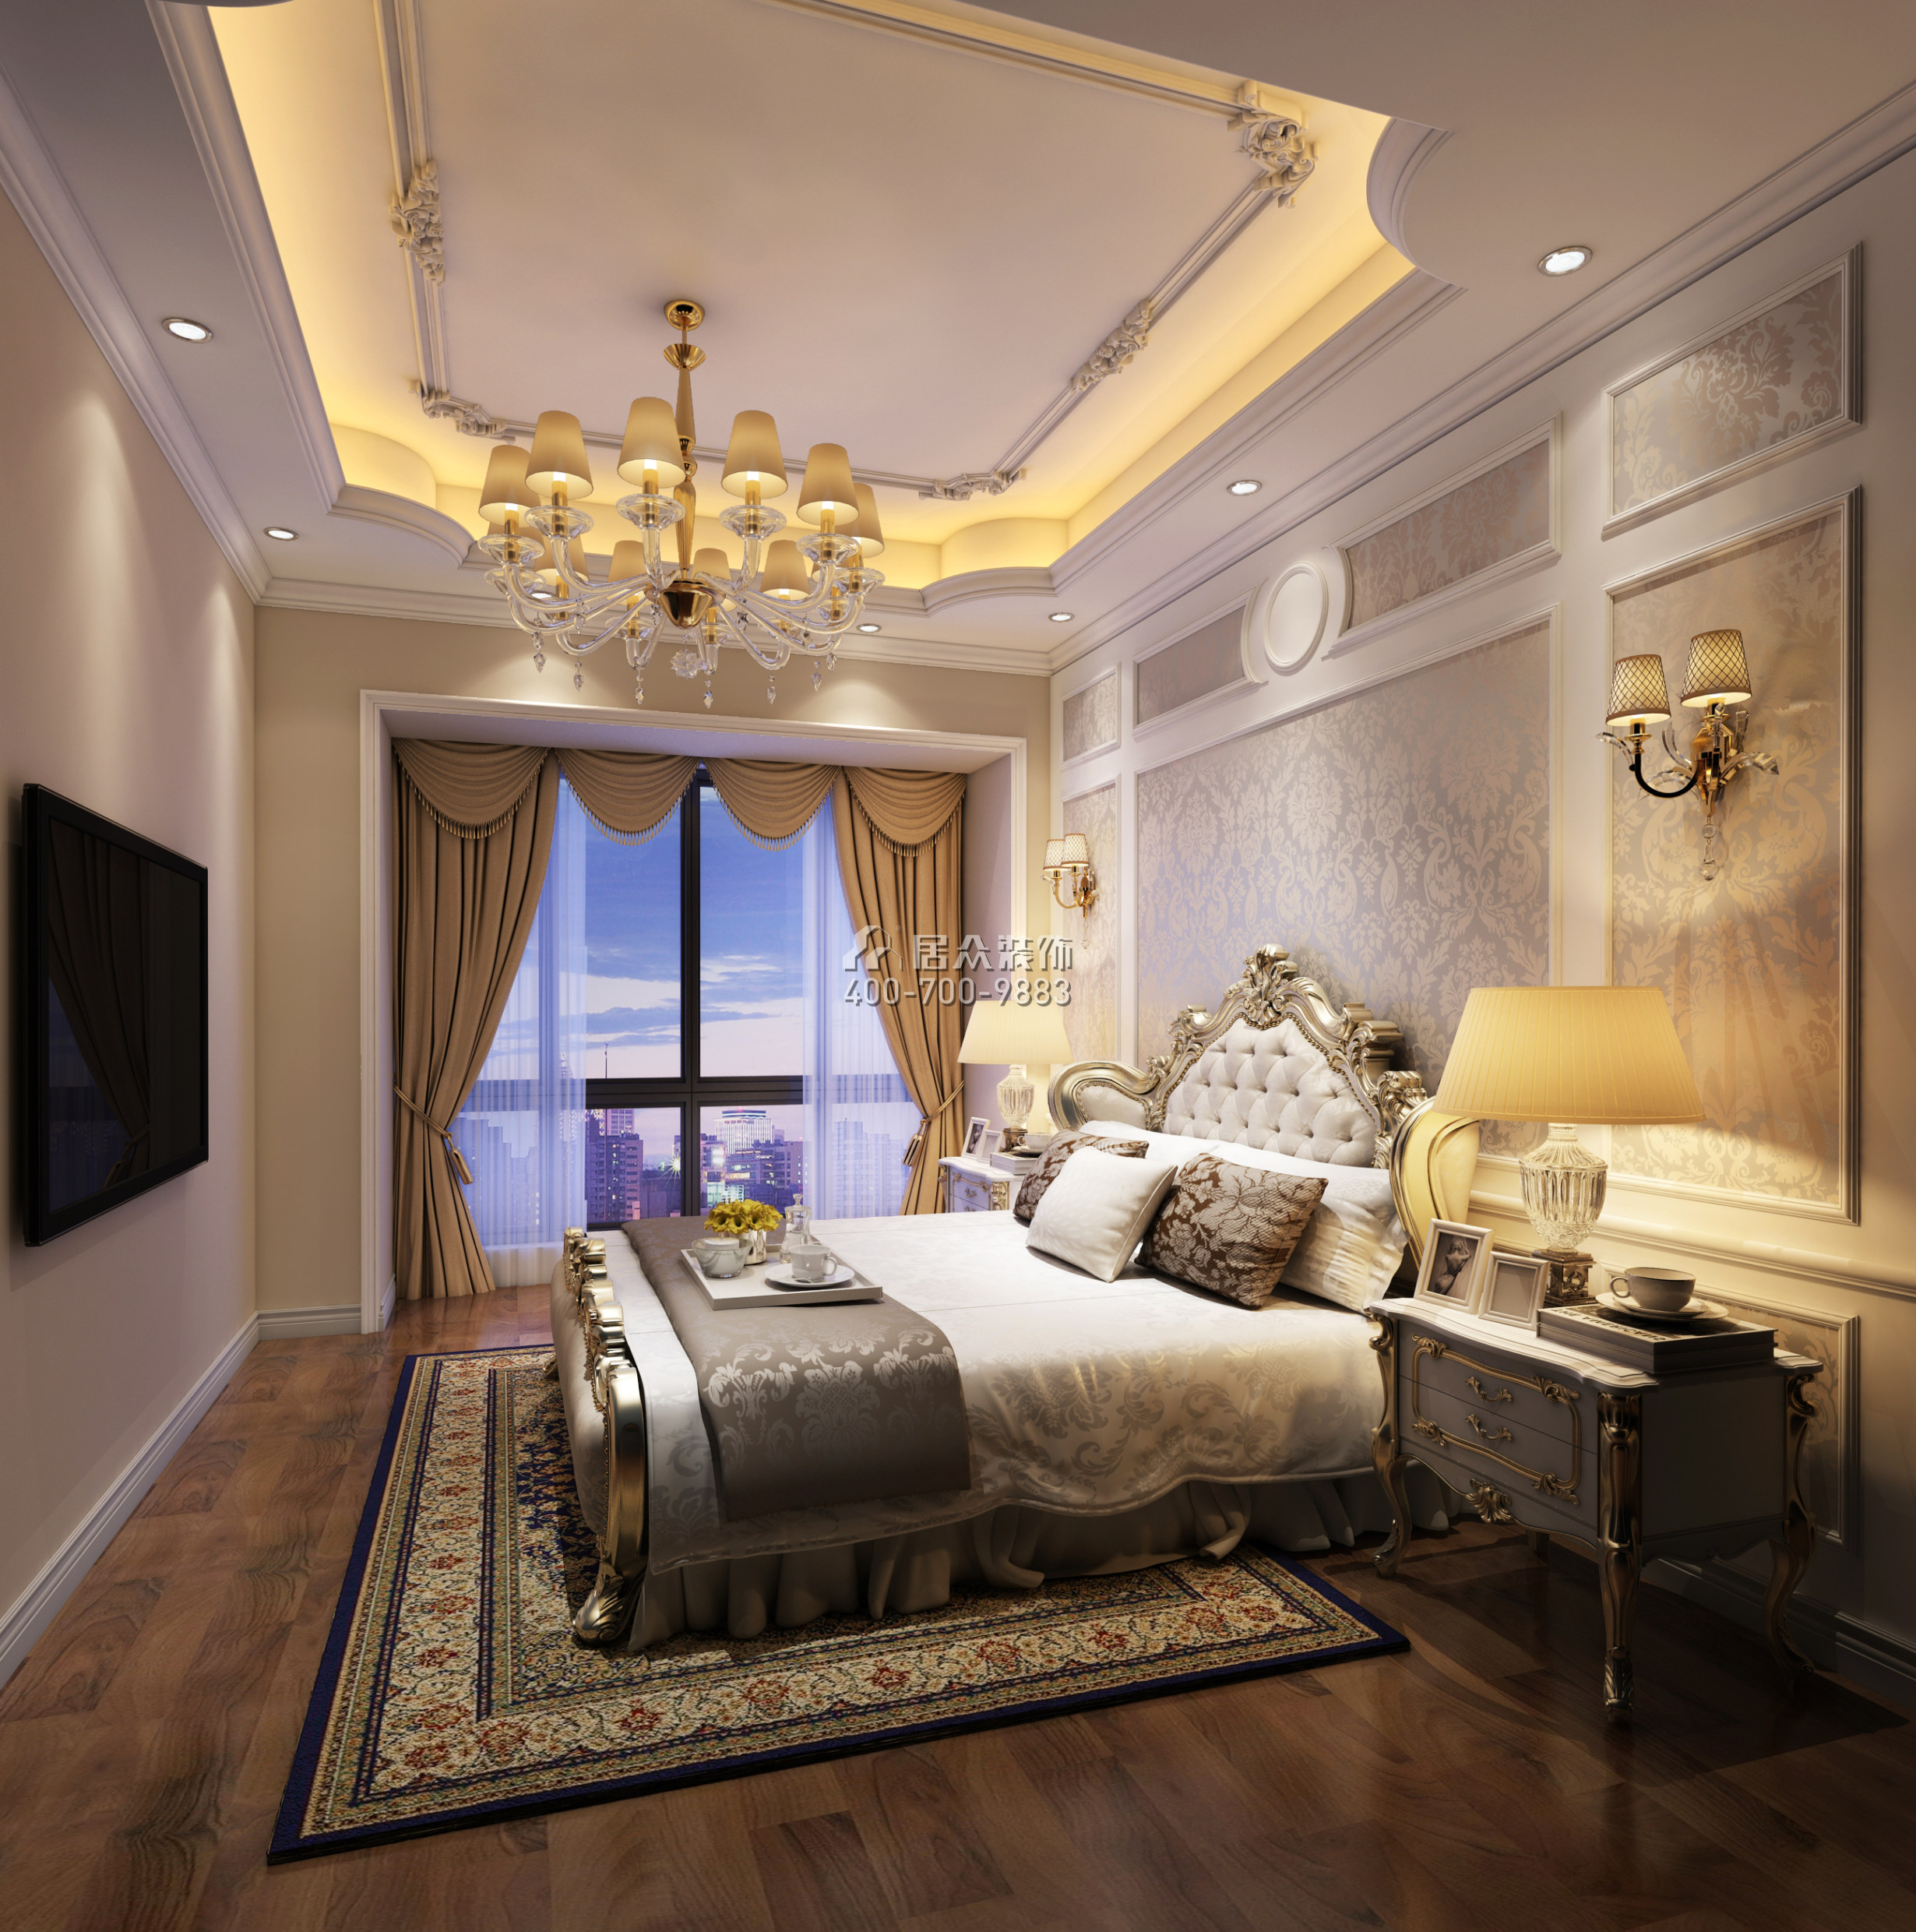 尚峰花园110平方米欧式风格平层户型卧室装修效果图